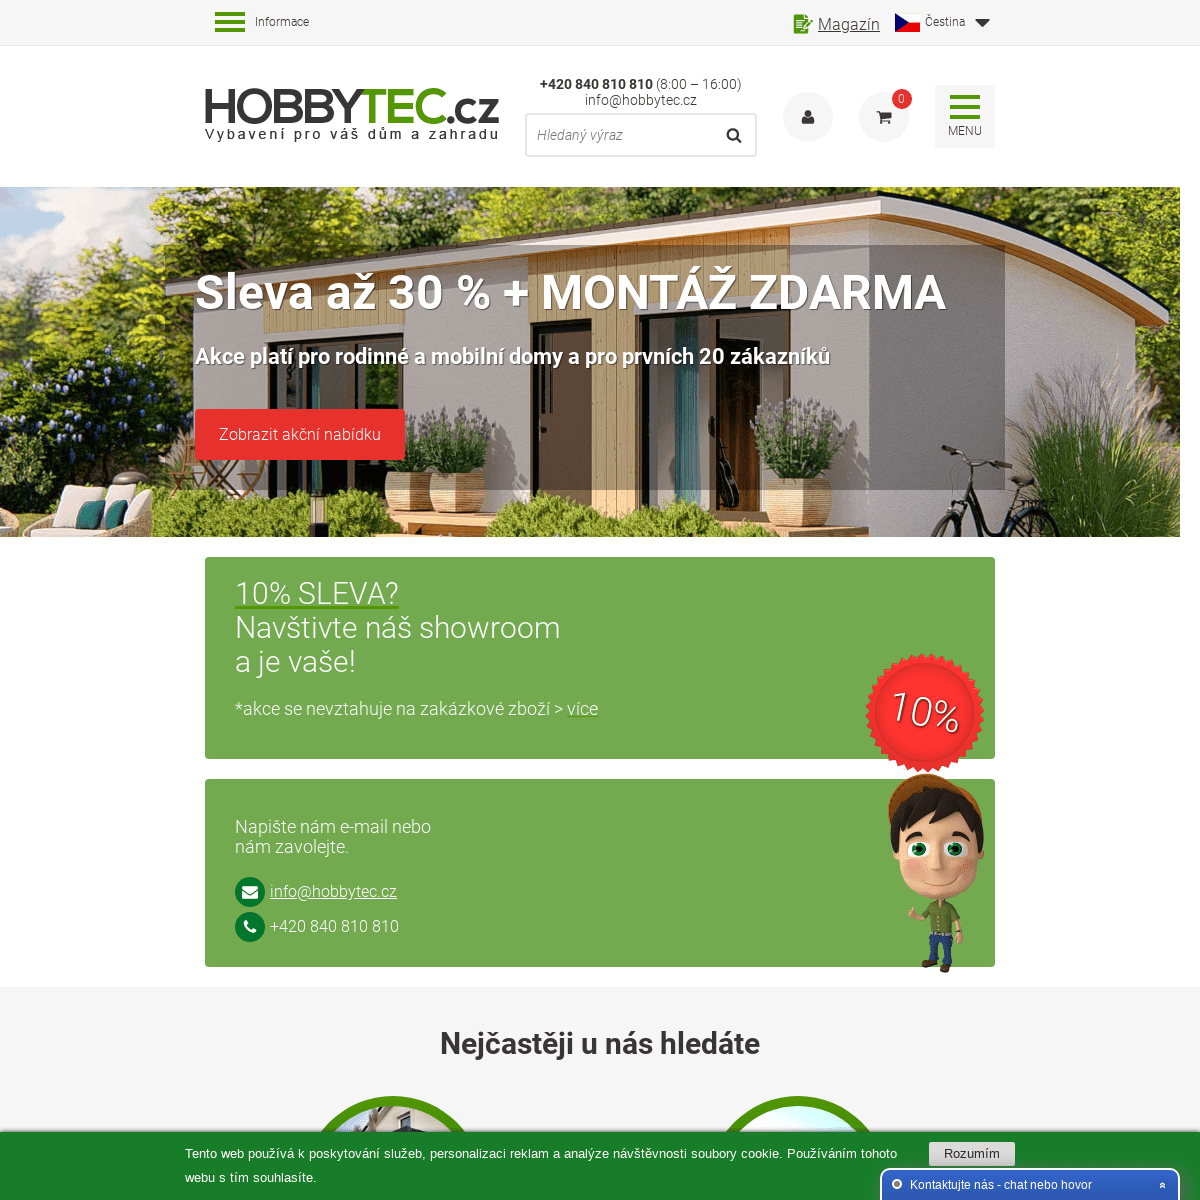 Vybavení pro váš dům a zahradu  | Hobbytec.cz